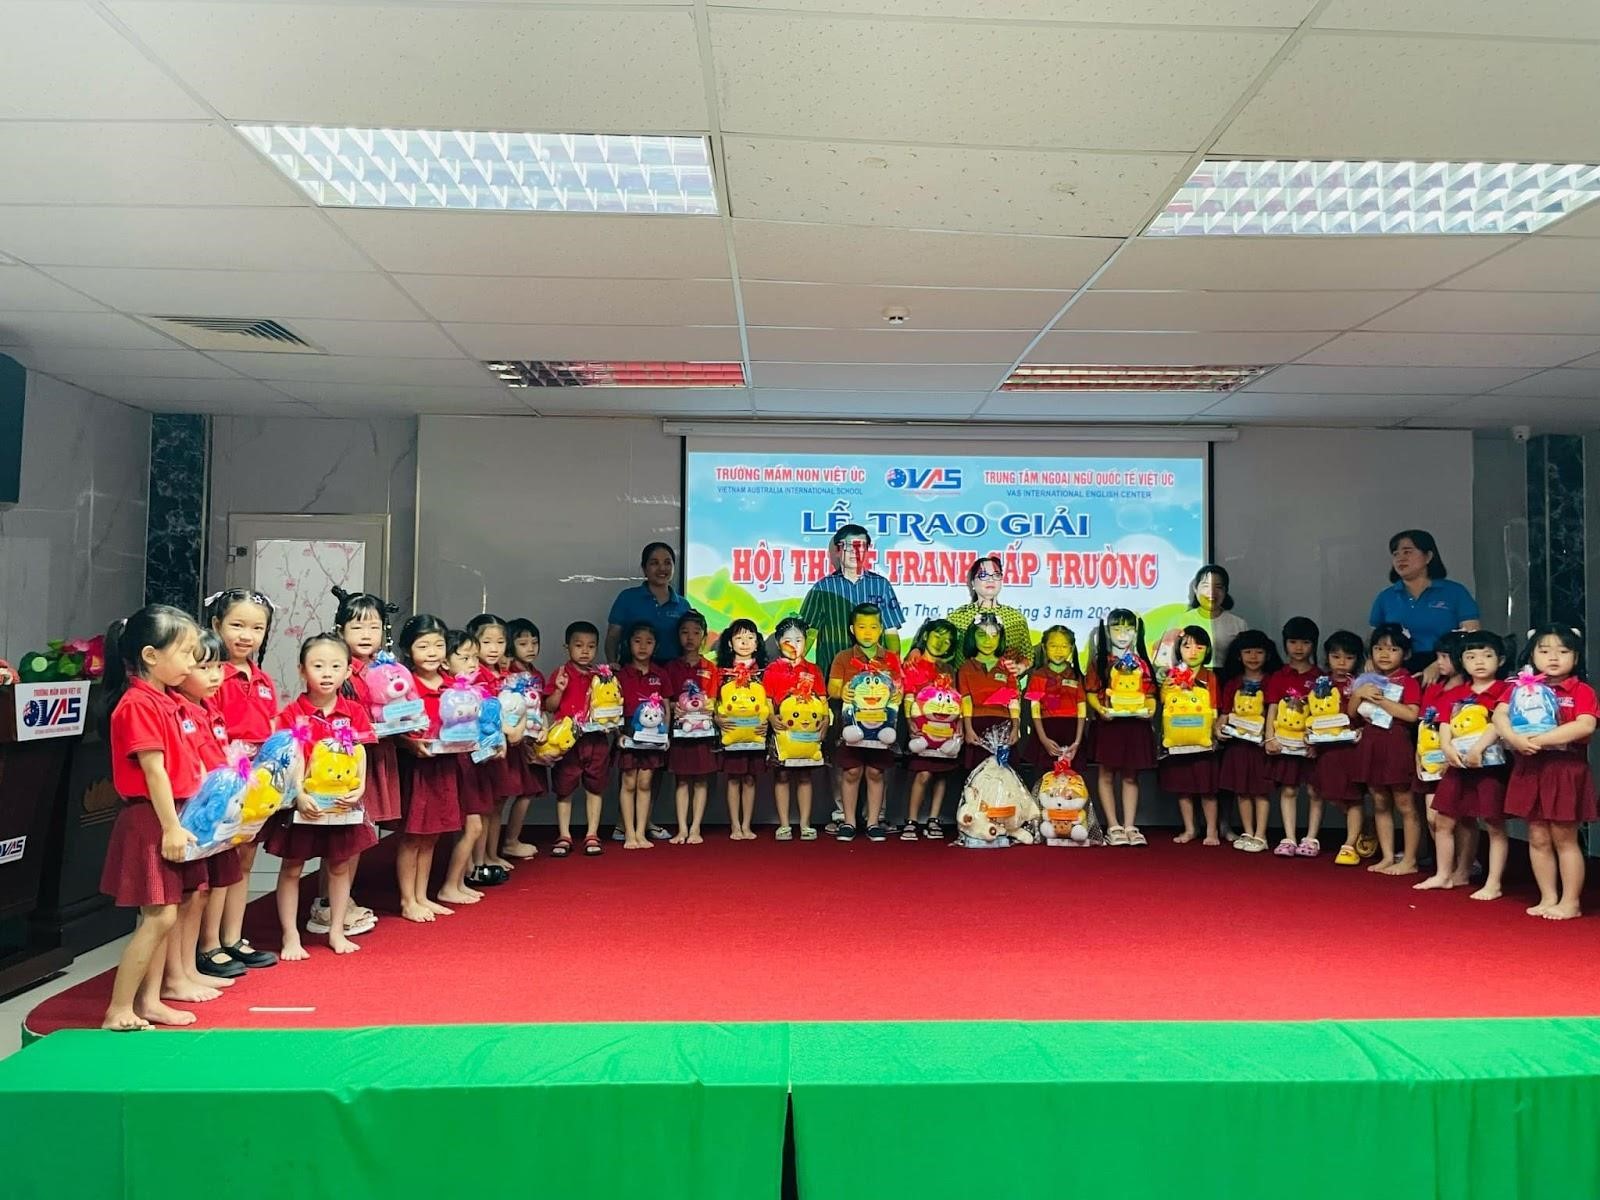 Trường mầm non Việt Úc Cần Thơ - Nơi khơi nguồn của những ý tưởng sáng tạo dành cho các bé - ảnh 1